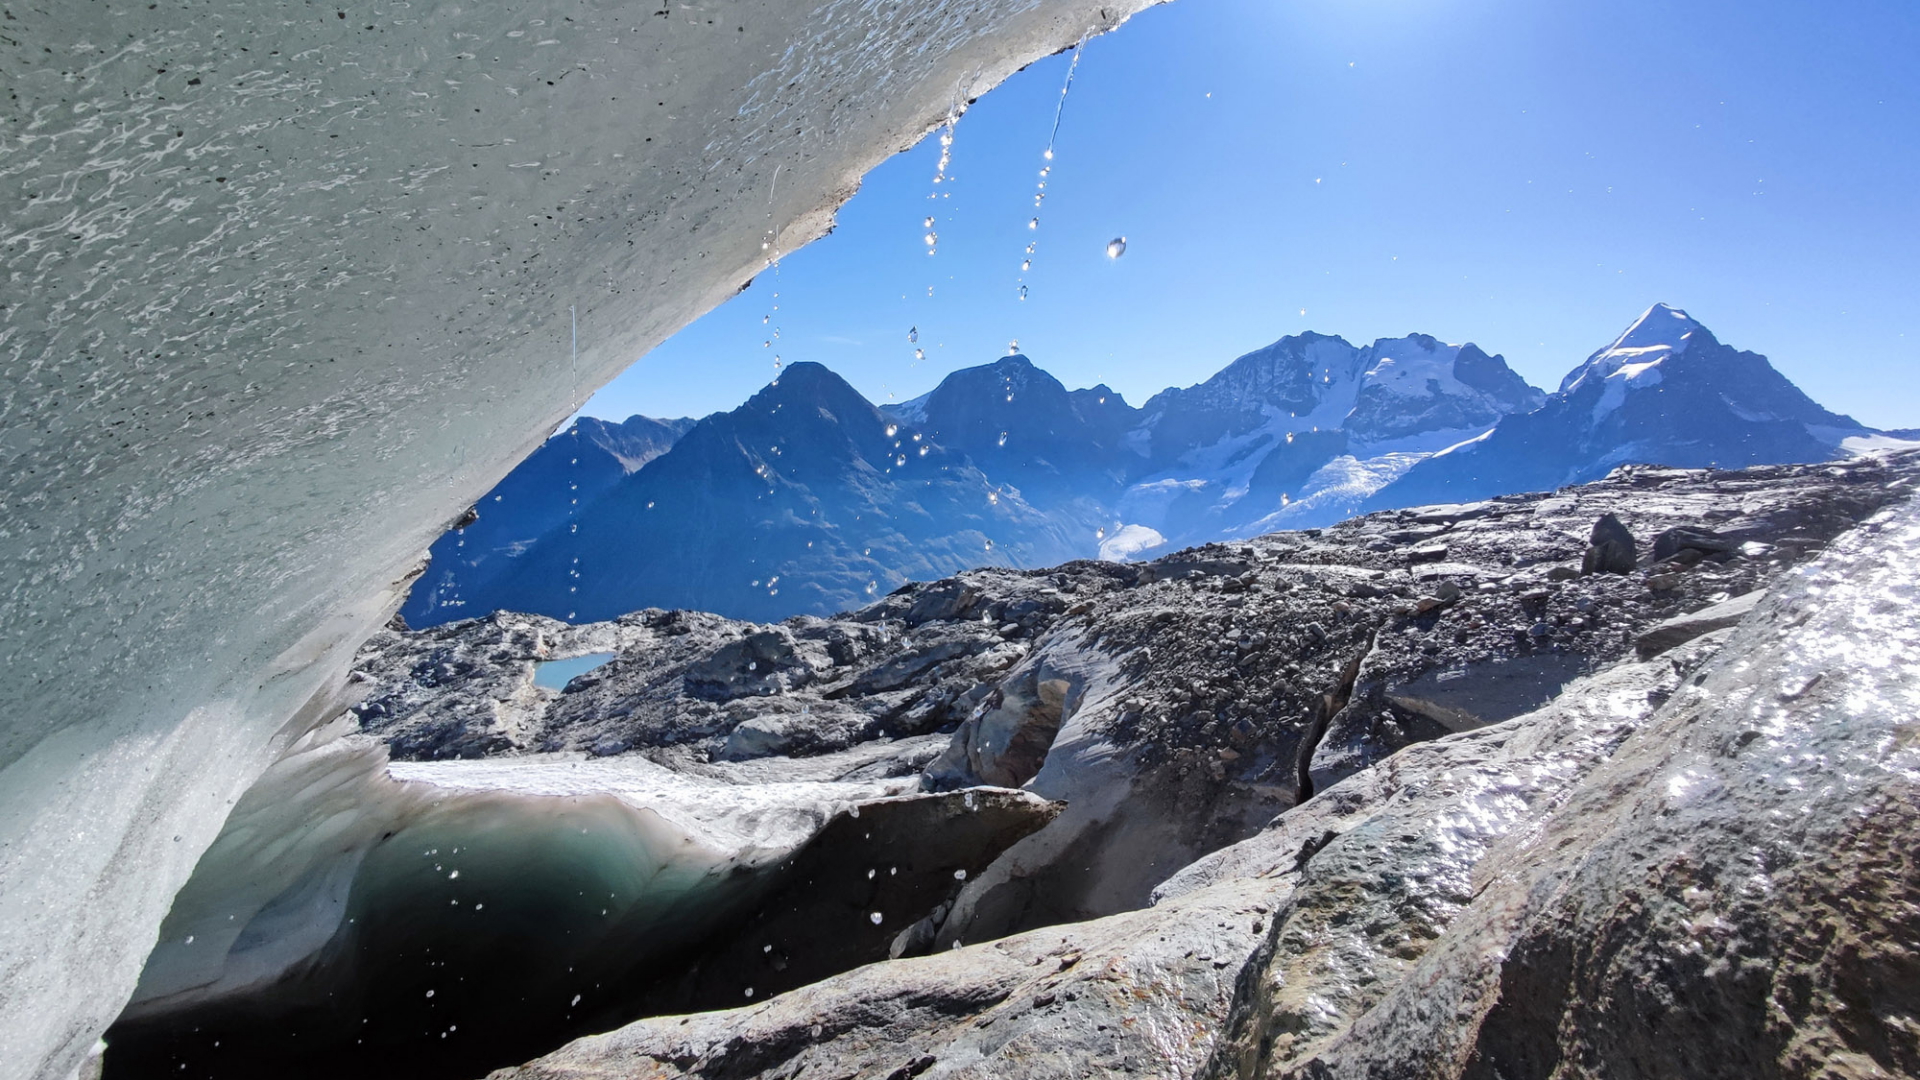 Selbst Mitte September schmilzt das Eis des Vadret dal Murtèl auf einer Höhe von 3100 Meter am Fuße des Piz Bernina rapide